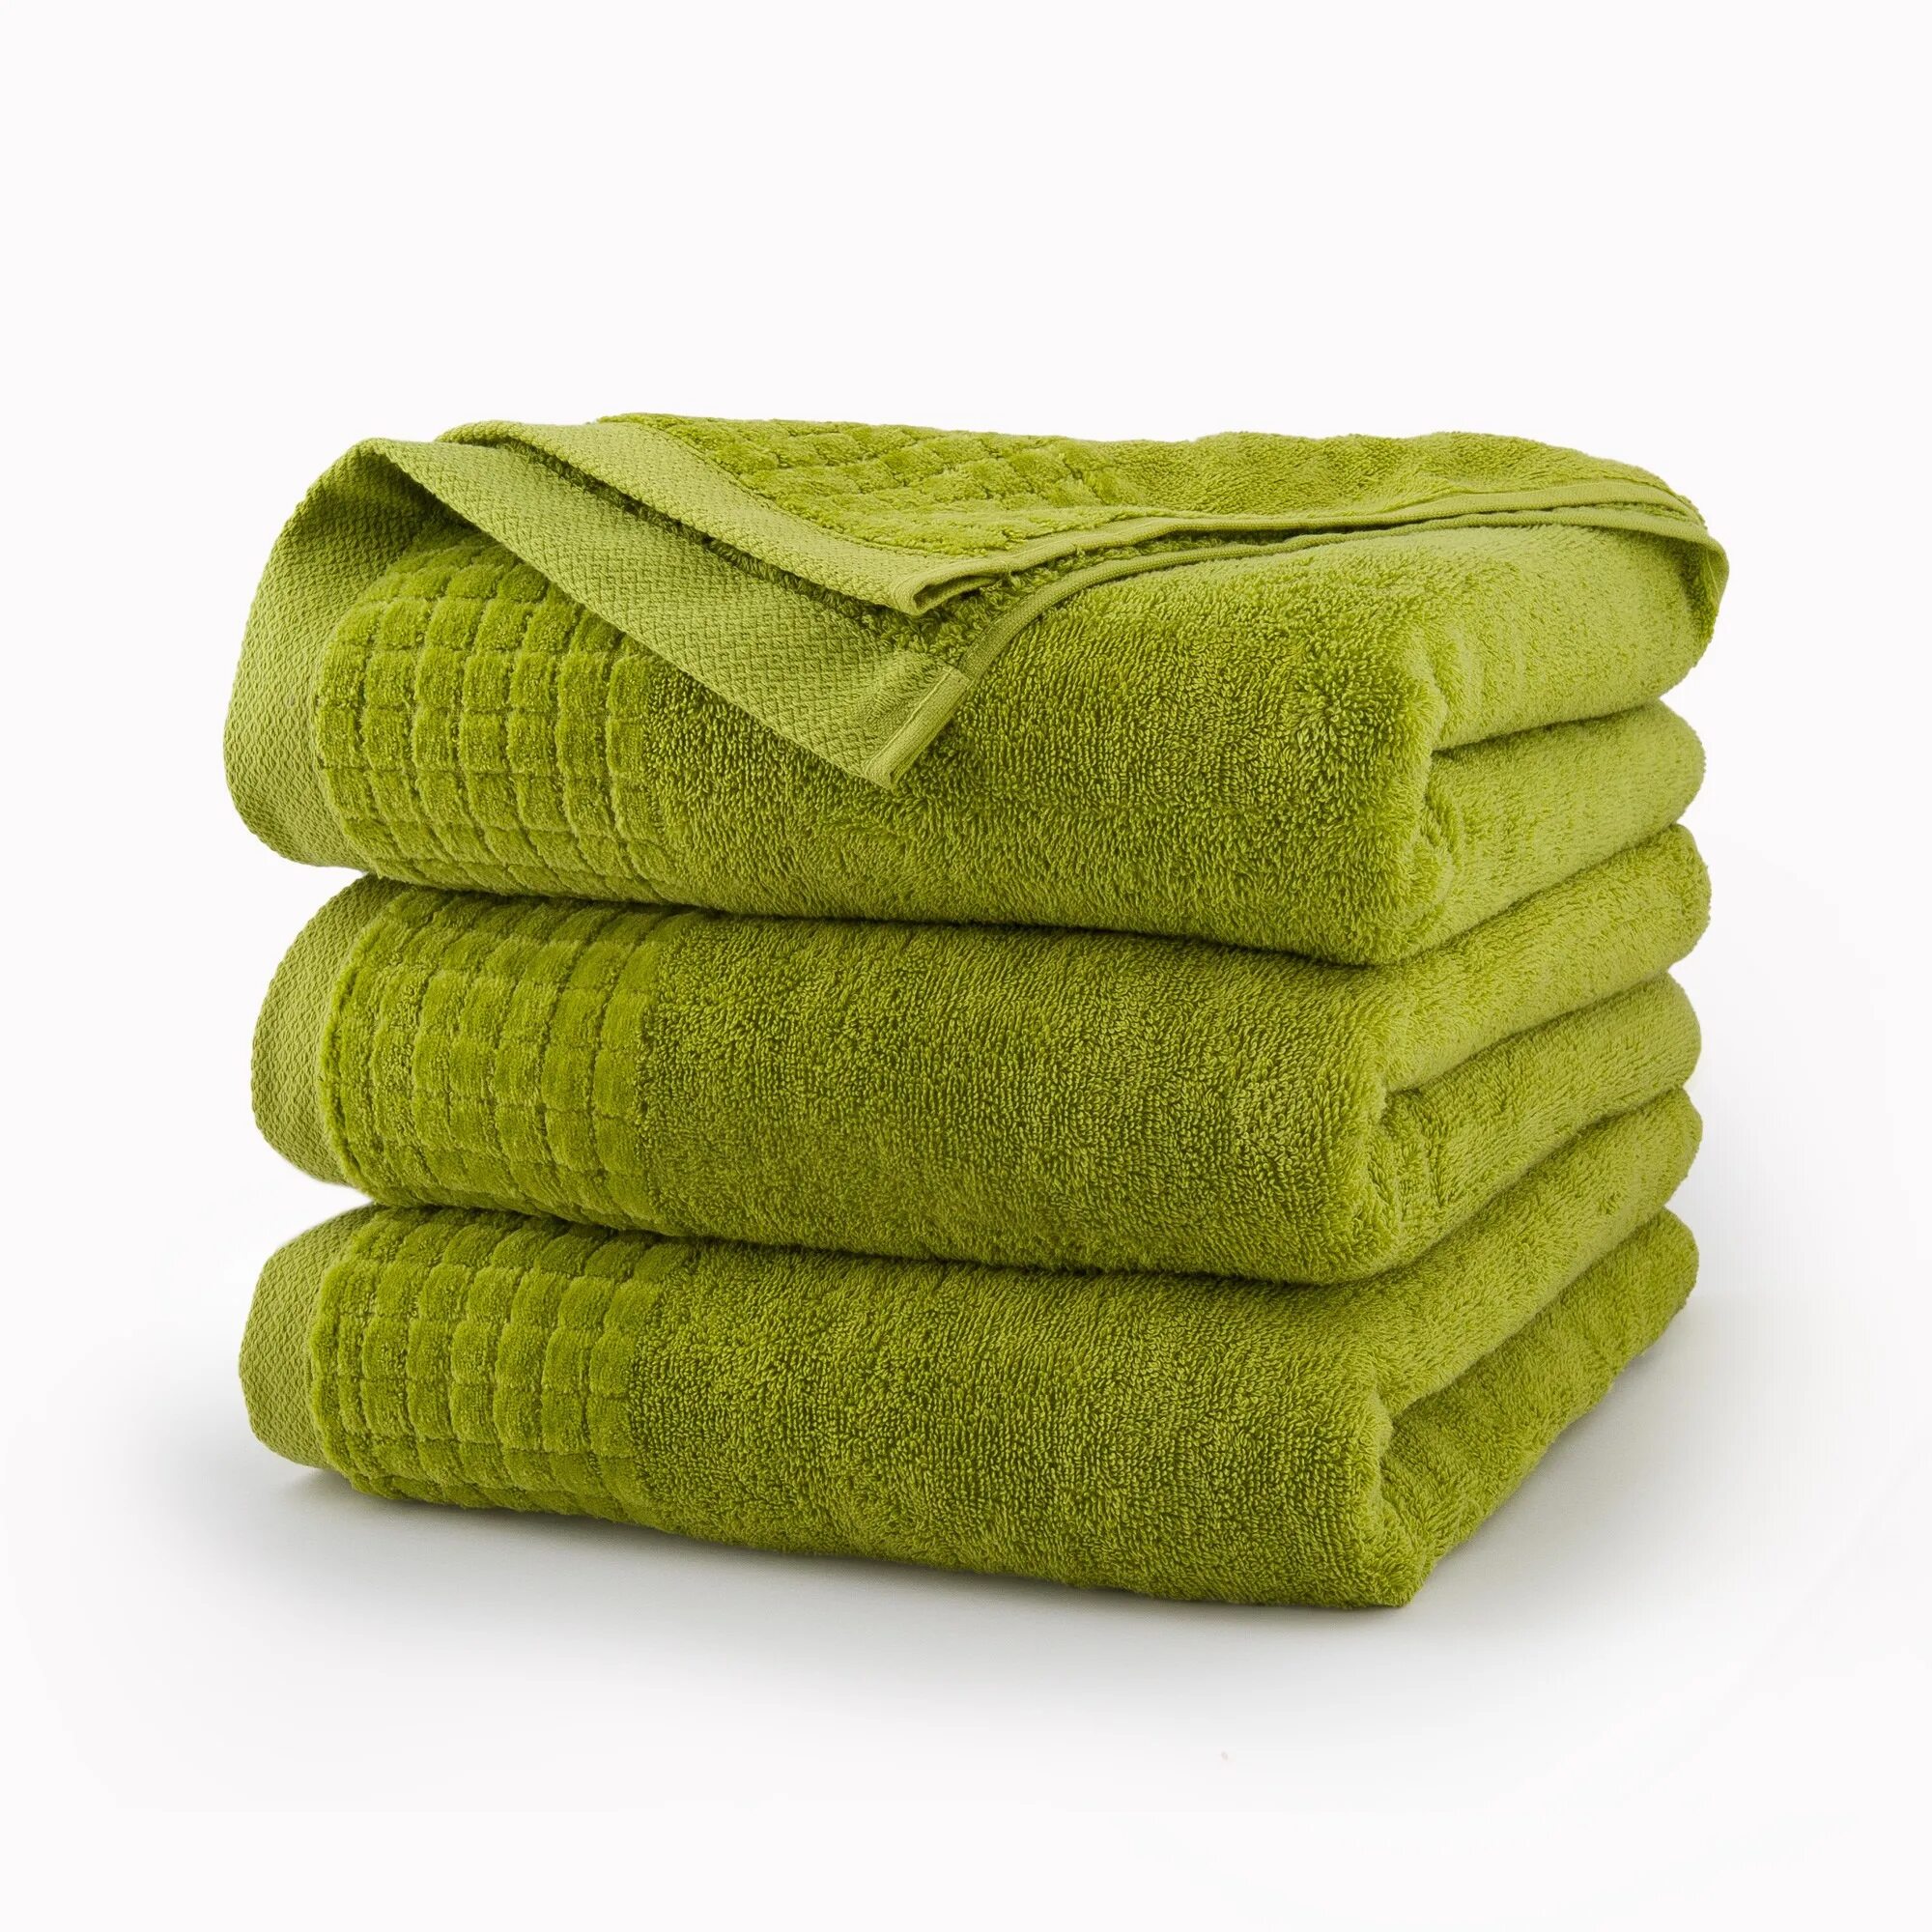 Прозрачные полотенца. Салатовое полотенце. Зеленое полотенце. Полотенце махровое зеленый. Сложенные полотенца.